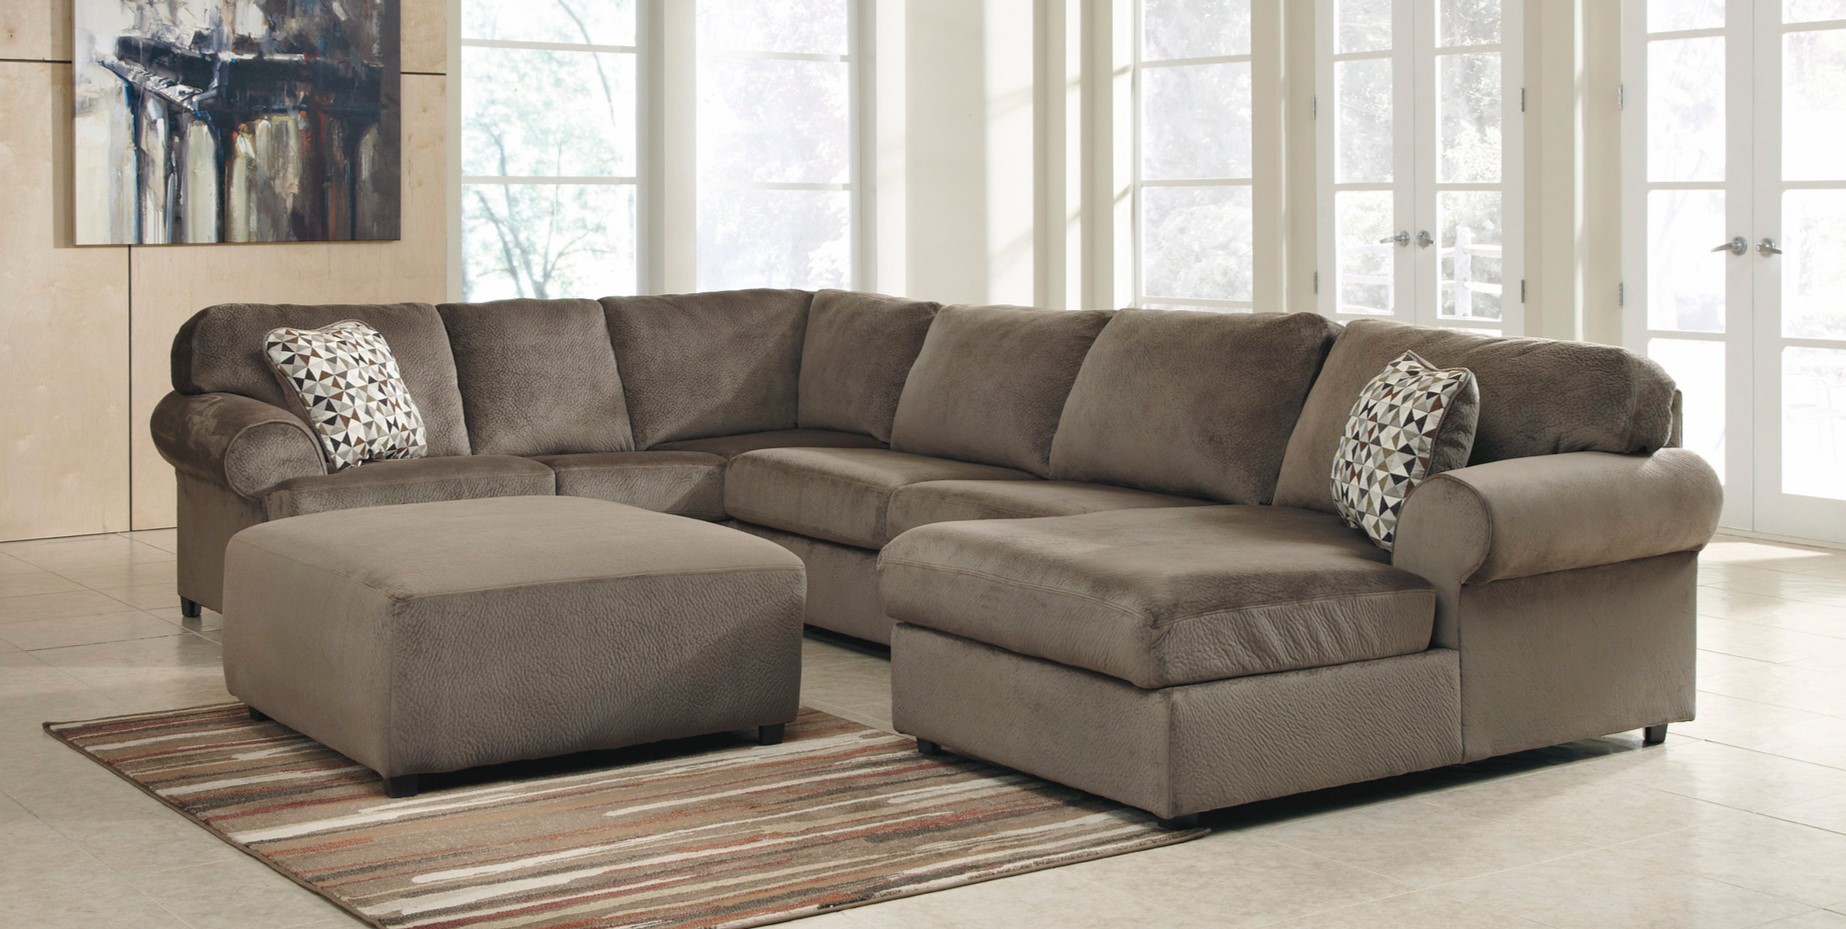 Угловой диван в гостиной можно дополнить стильным пуфом аналогичного цвета